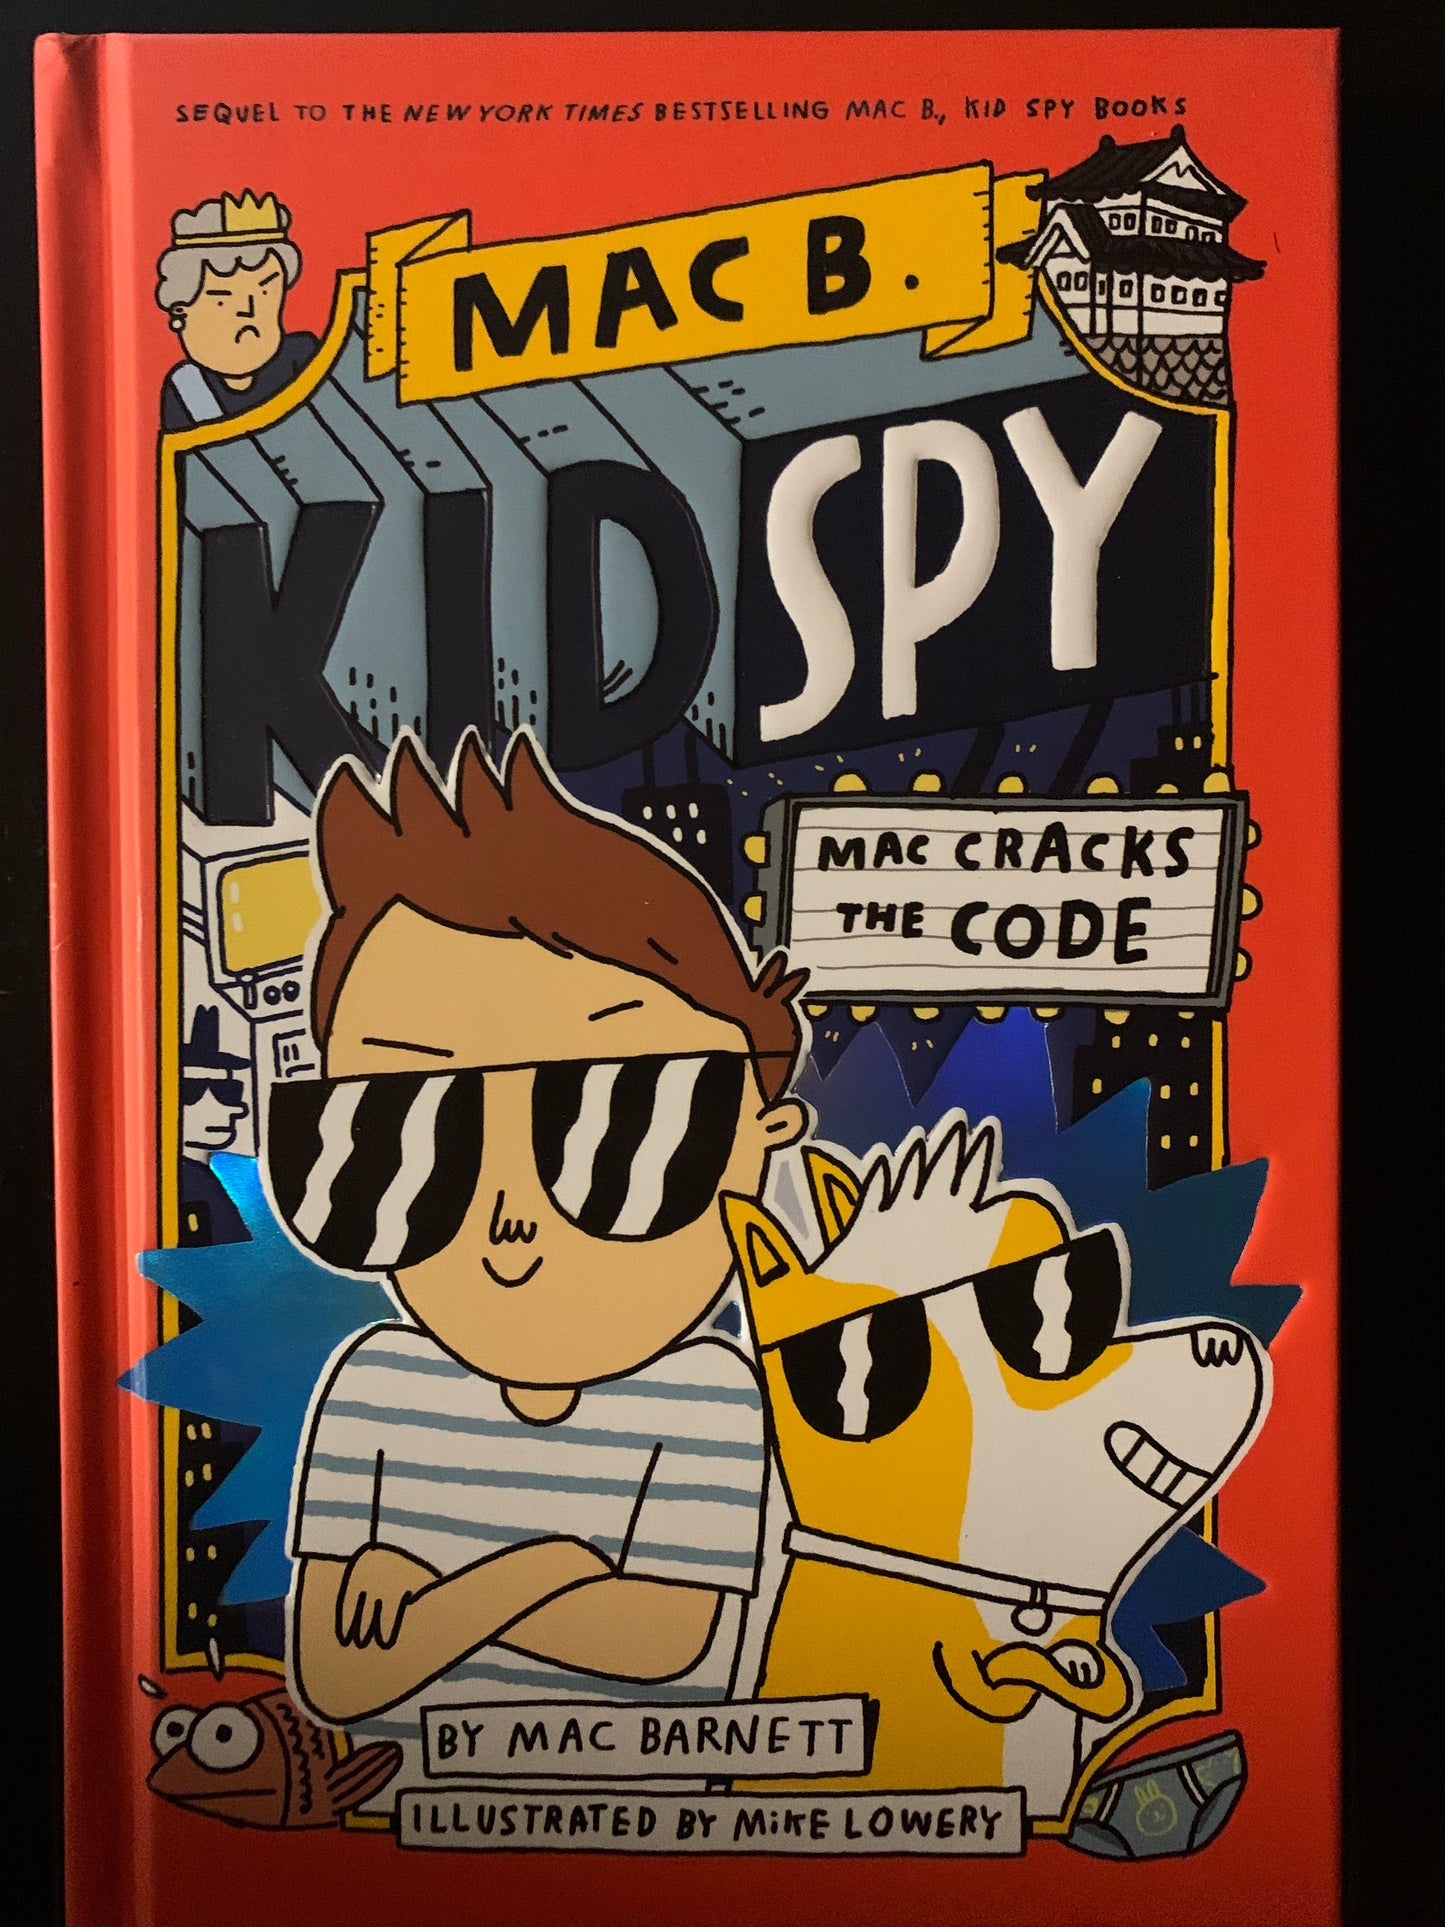 Mac B. Kid Spy: Mac Cracks the Code (#4)